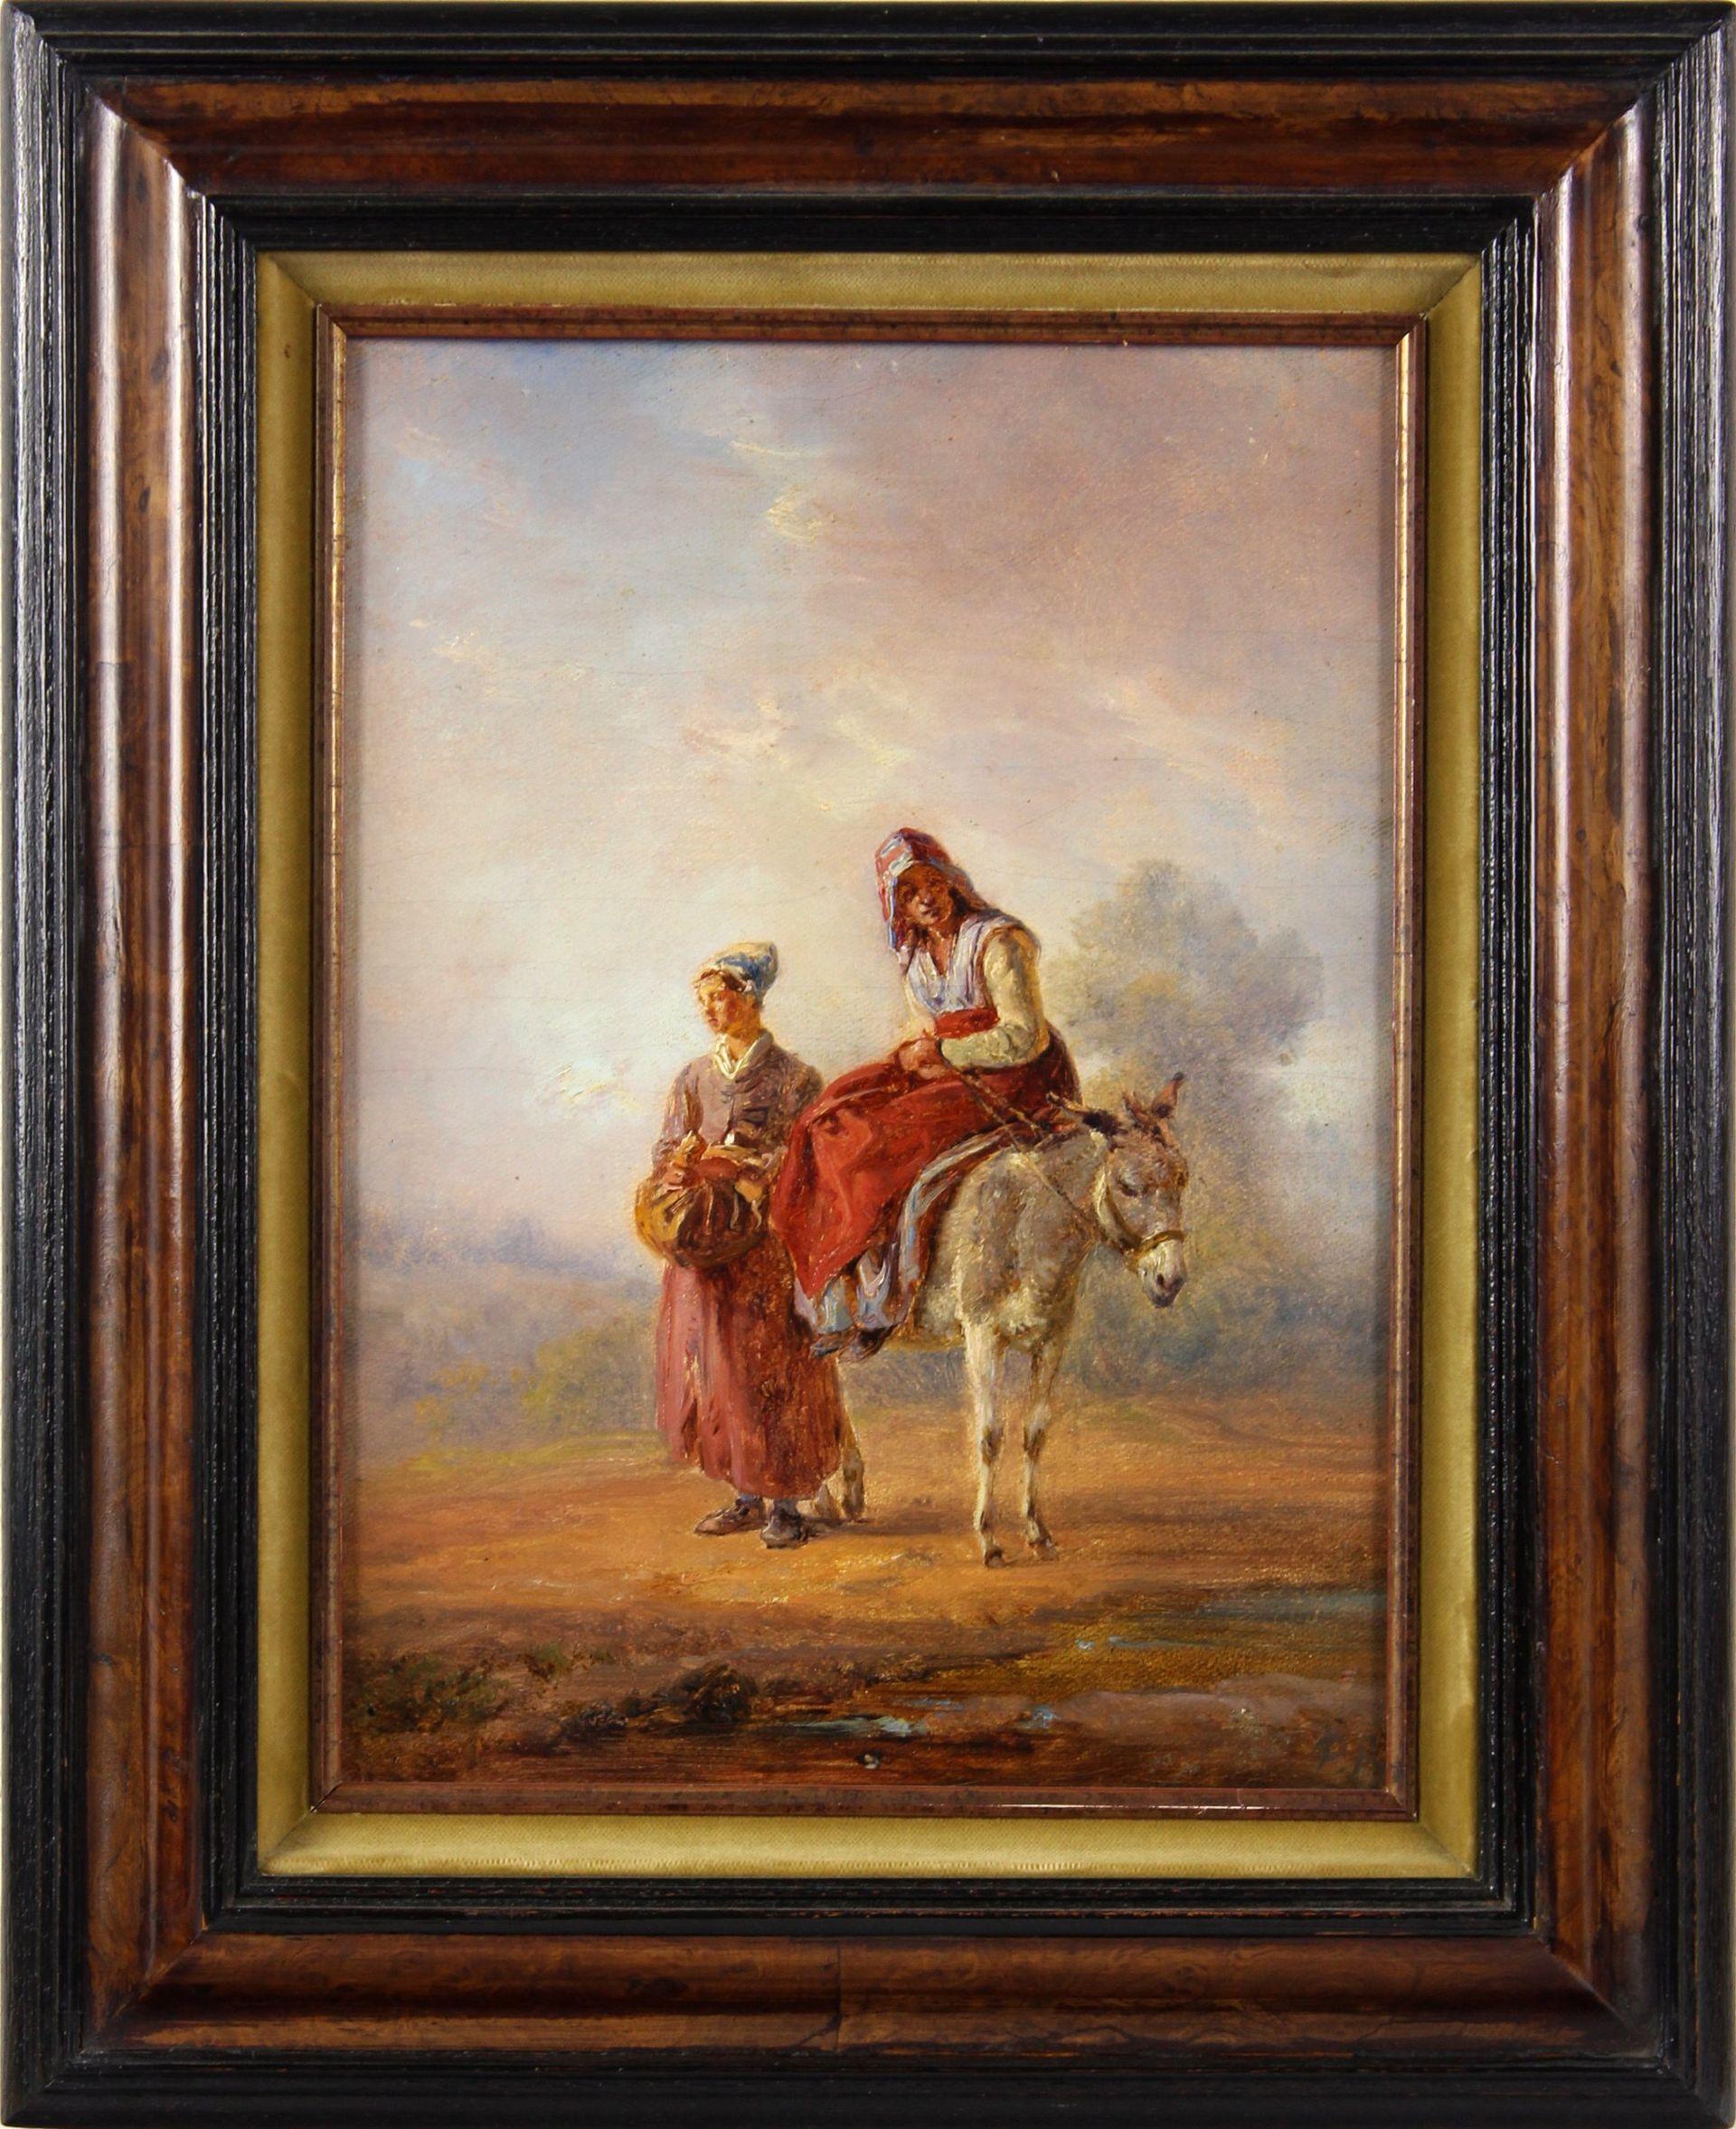 Zwei Landfrauen mit einem Esel - Melancholie in einer Farbatmosphäre - – Painting von Pierre Louis De La Rive